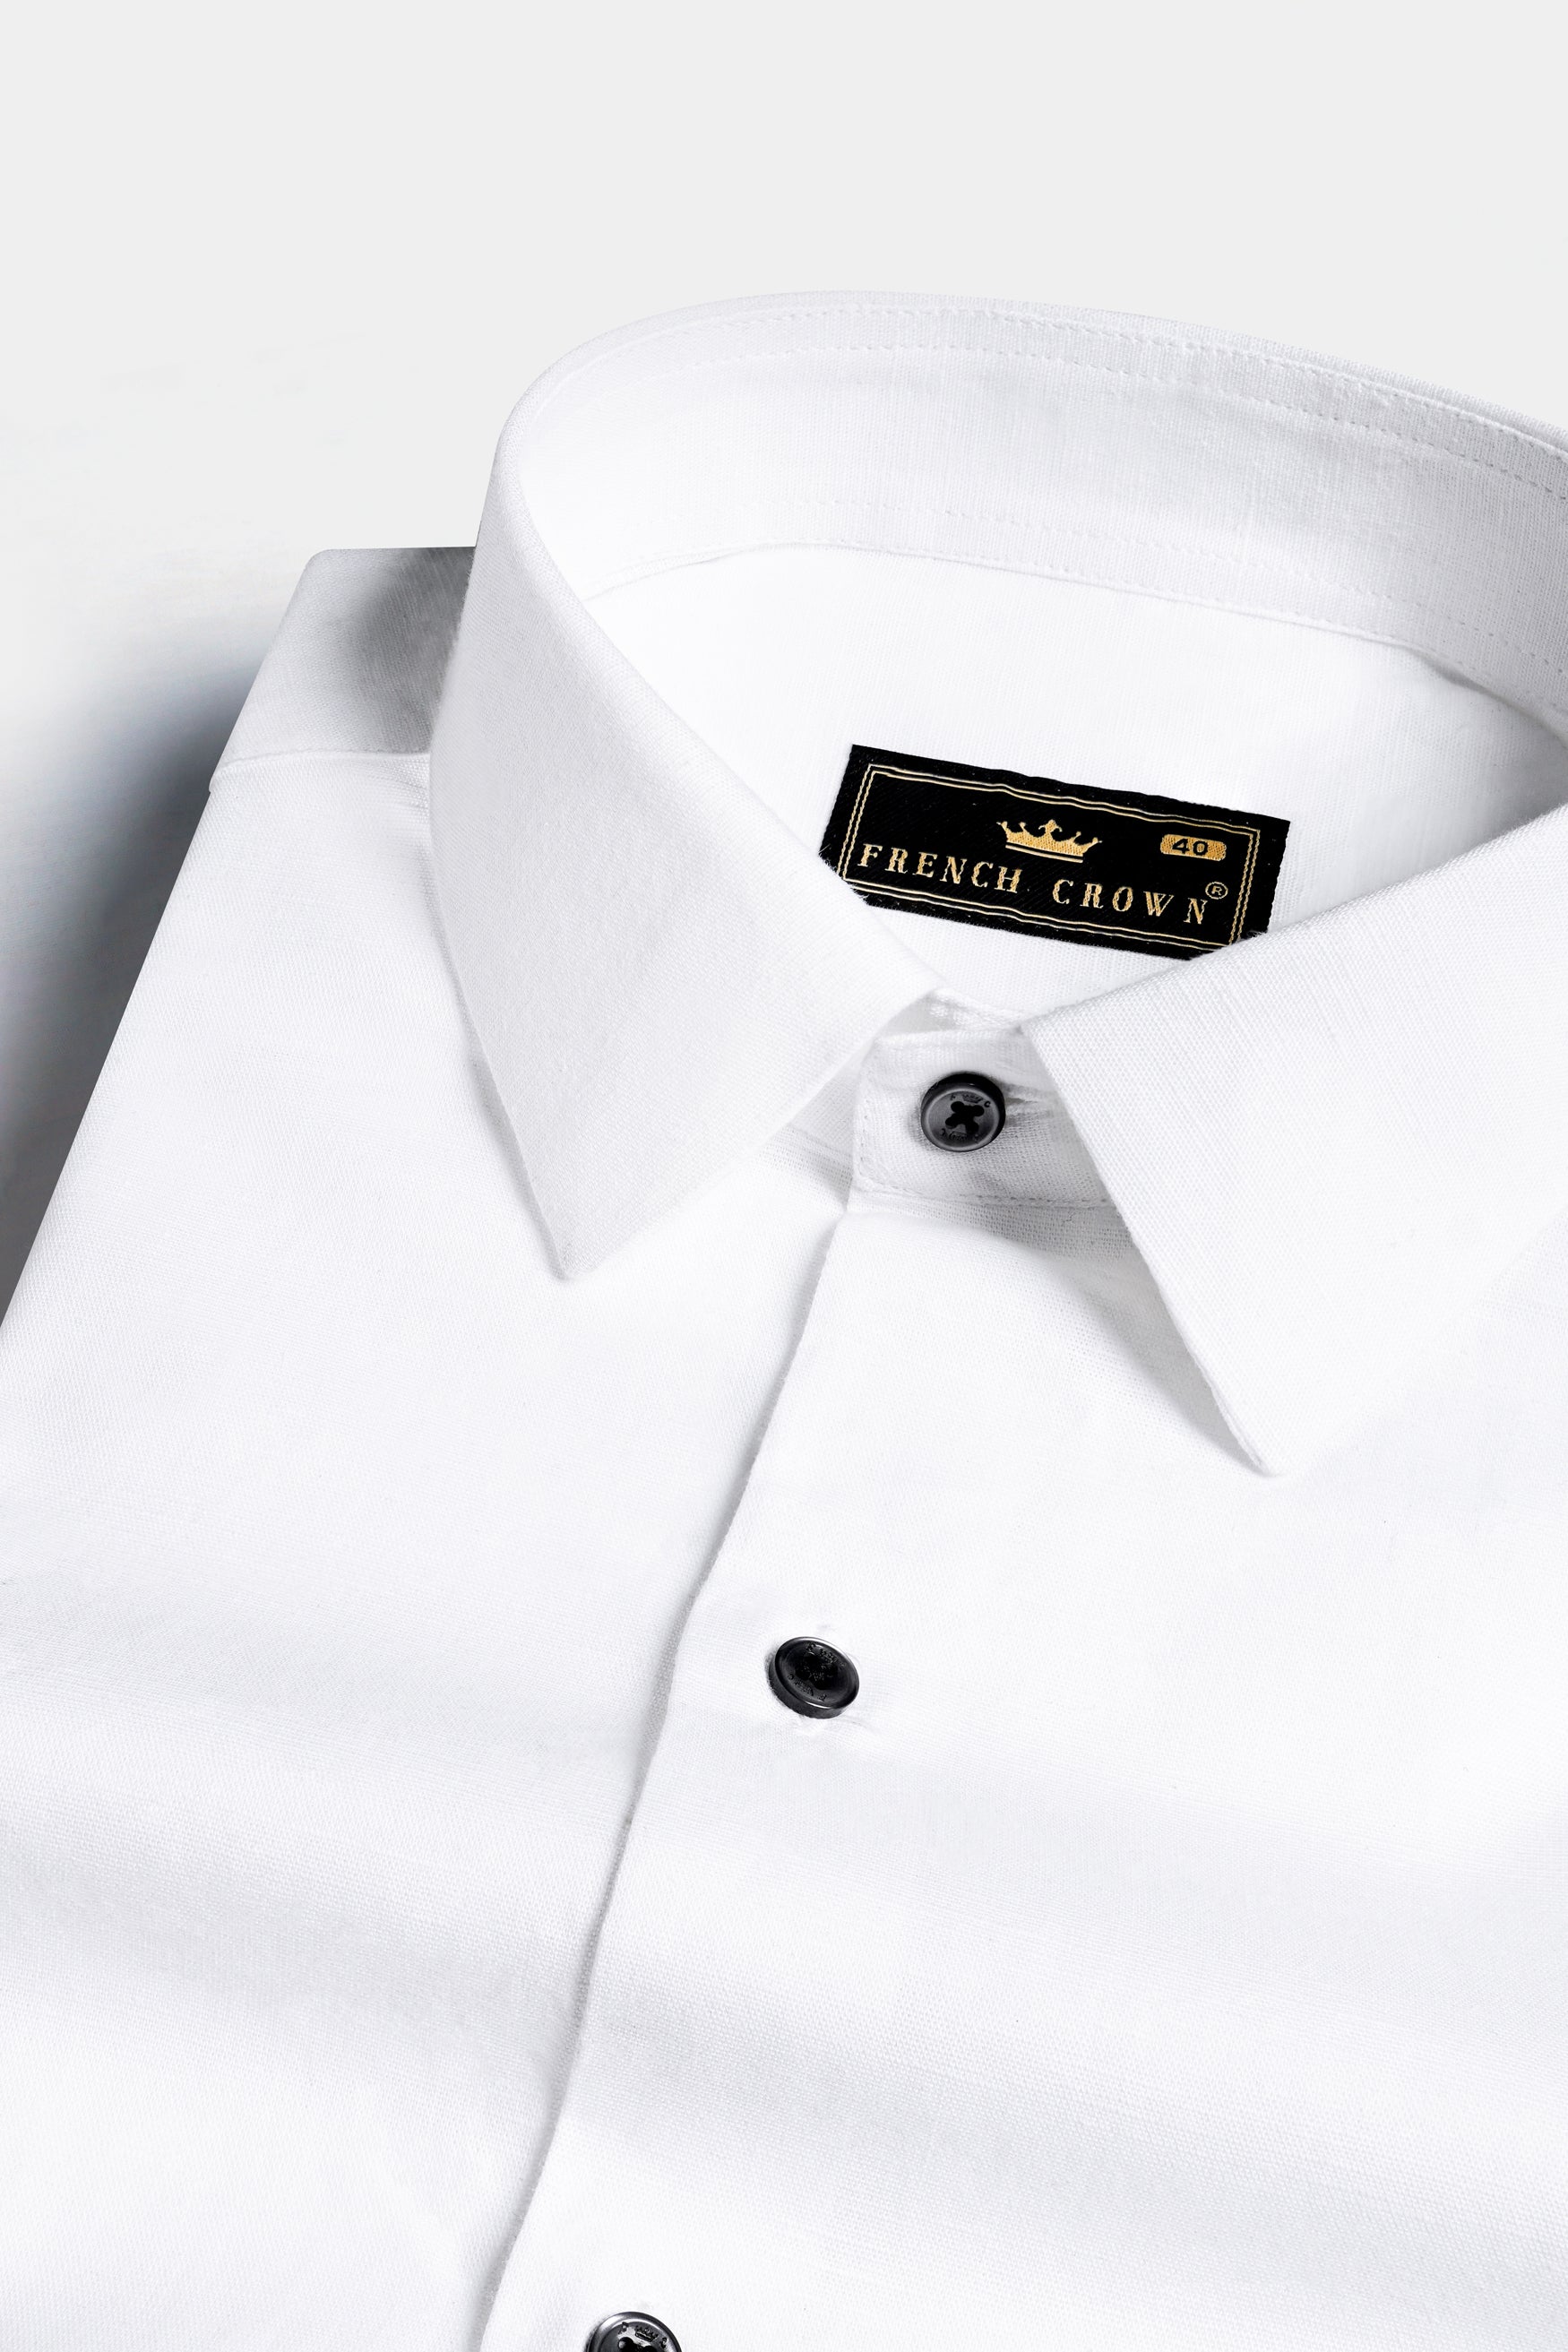 Bright Rabbit White Formal Plain-Solid Rare Premium Linen Shirt For Men